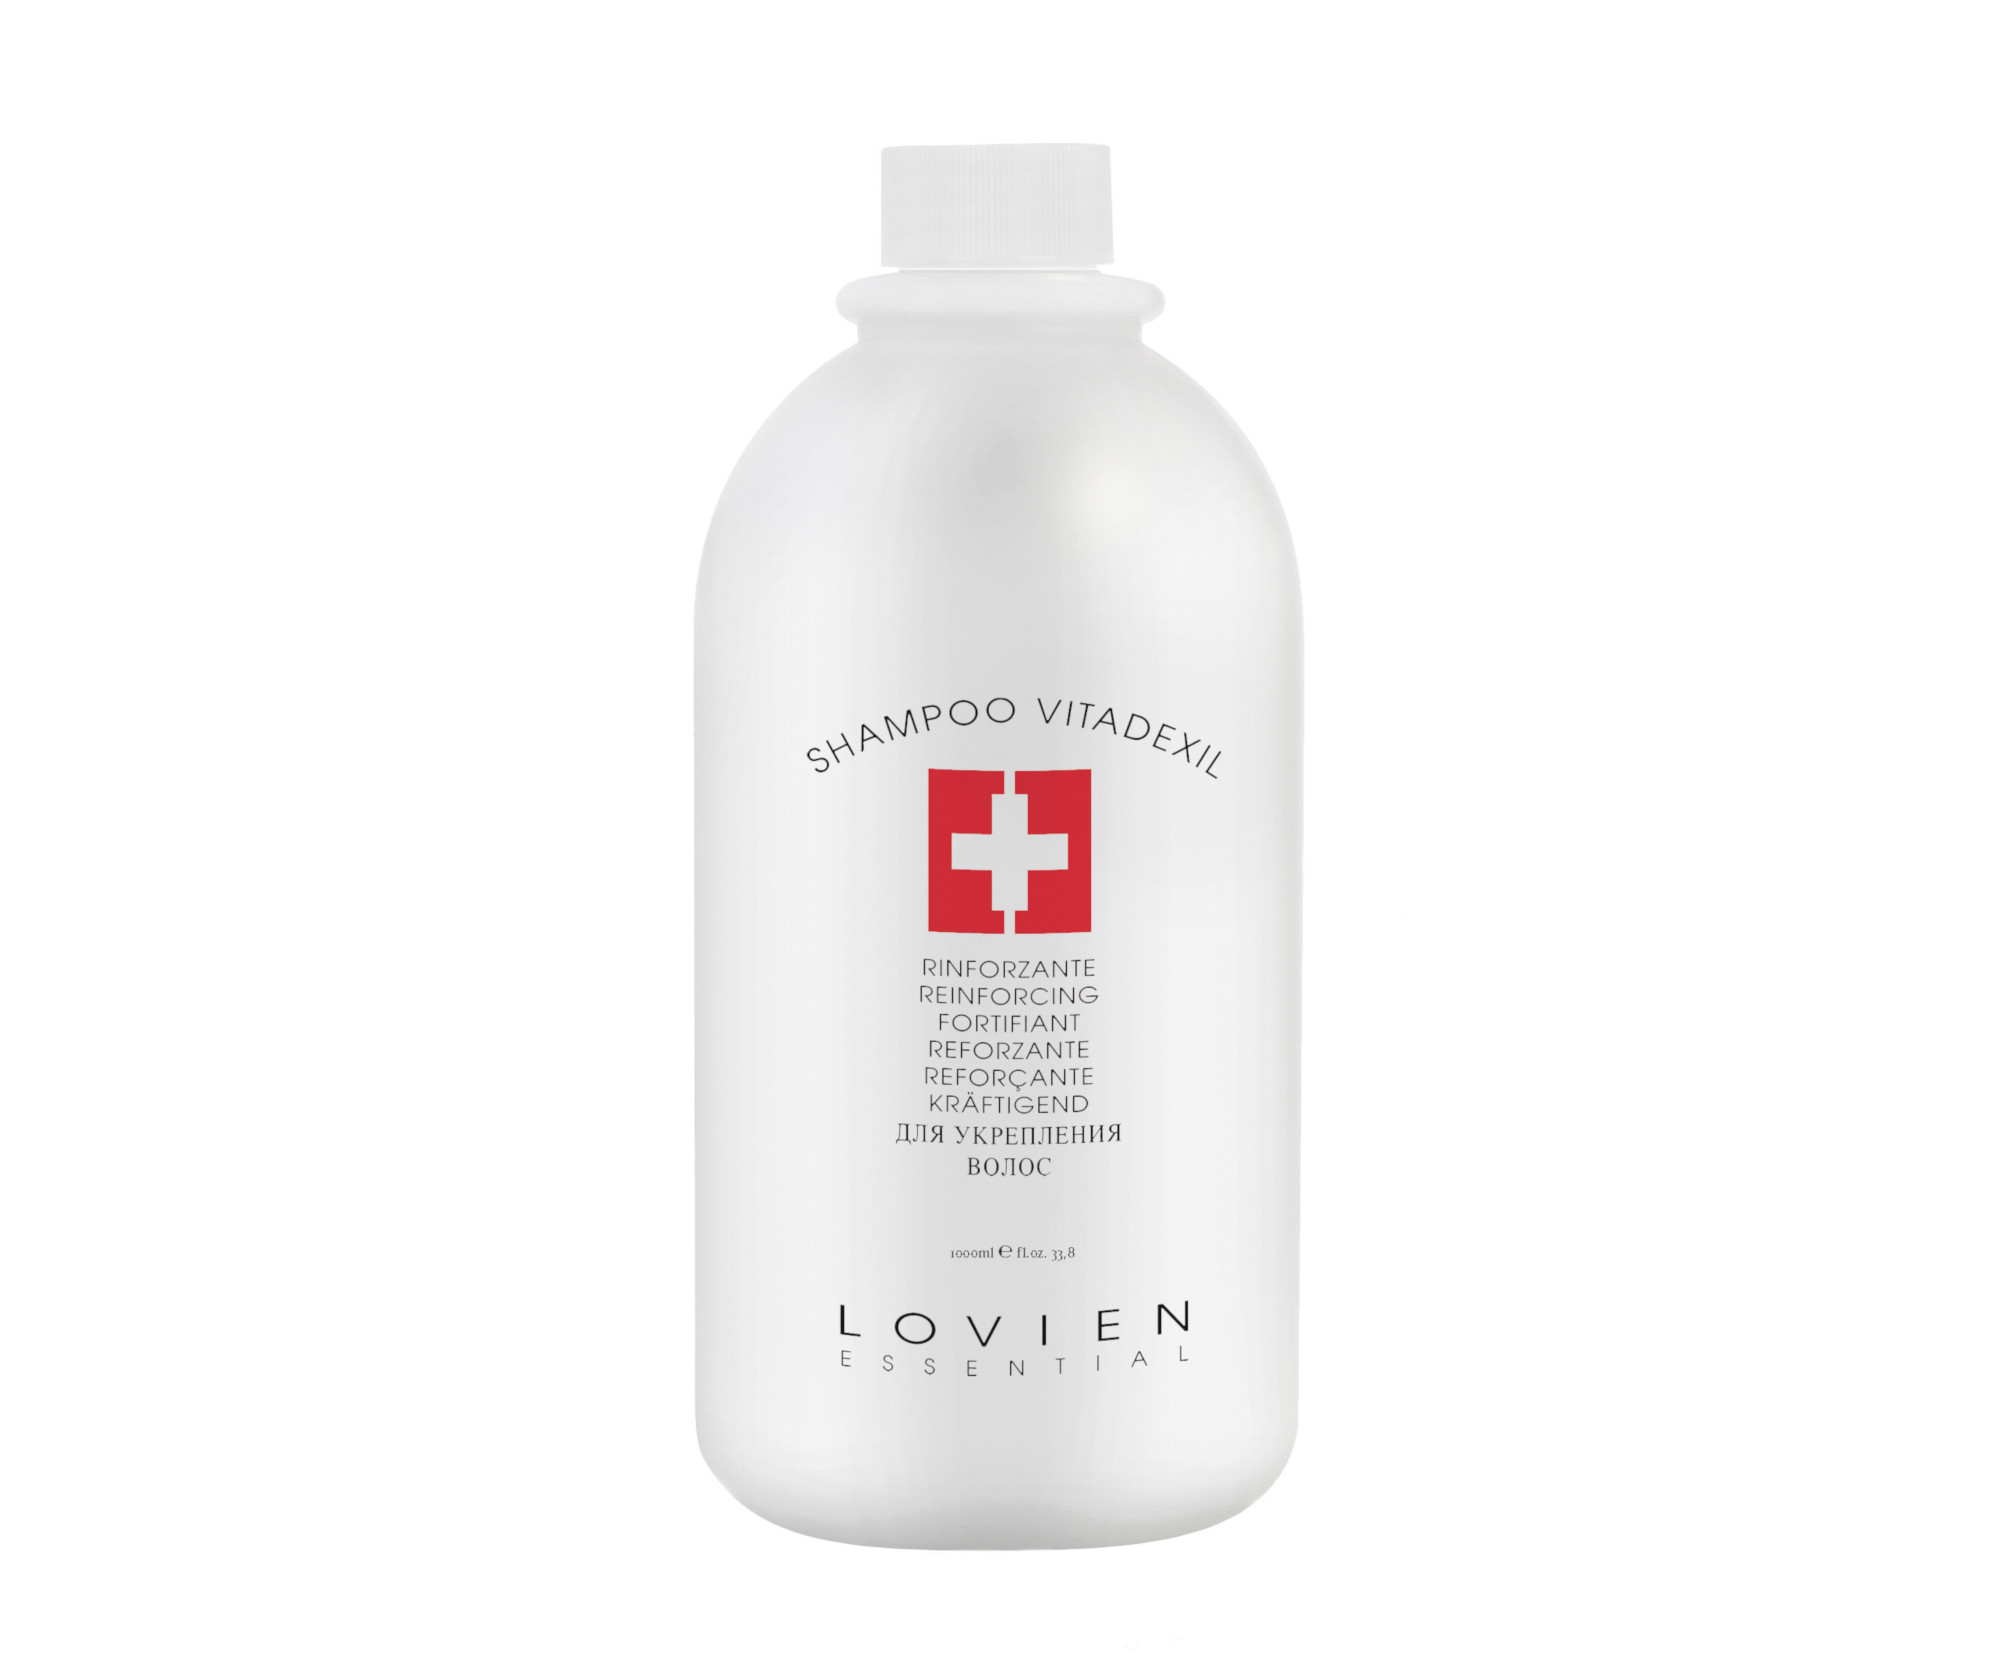 Šampon pro obnovení vitality vlasů Lovien Essential Shampoo Vitadexil - 1000 ml (73) + dárek zdarma